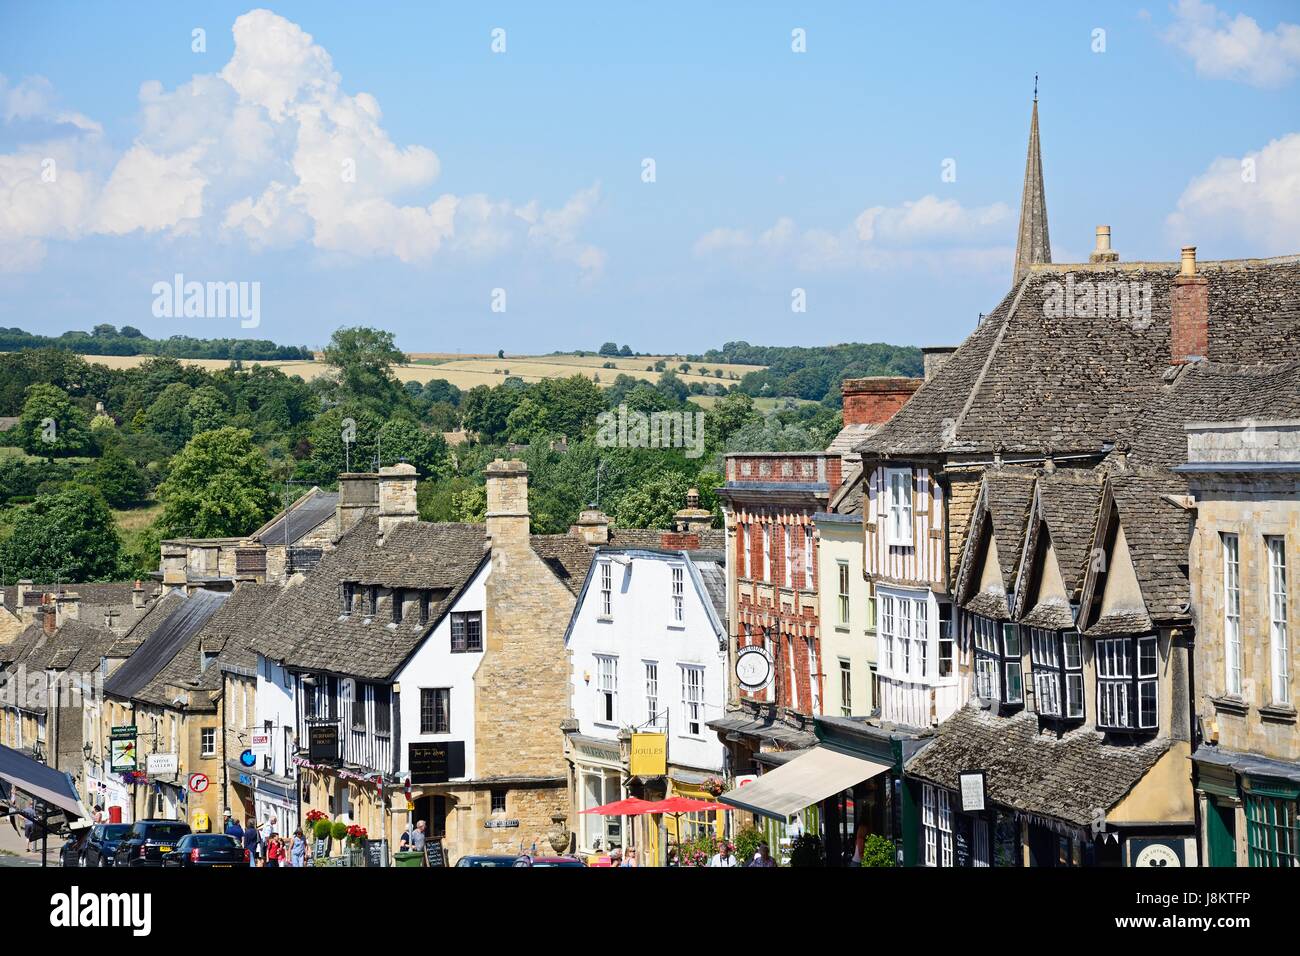 Vista de comercios y empresas a lo largo de la colina calle comercial durante la temporada de verano, el Burford, Oxfordshire, Inglaterra, Reino Unido, Europa Occidental. Foto de stock